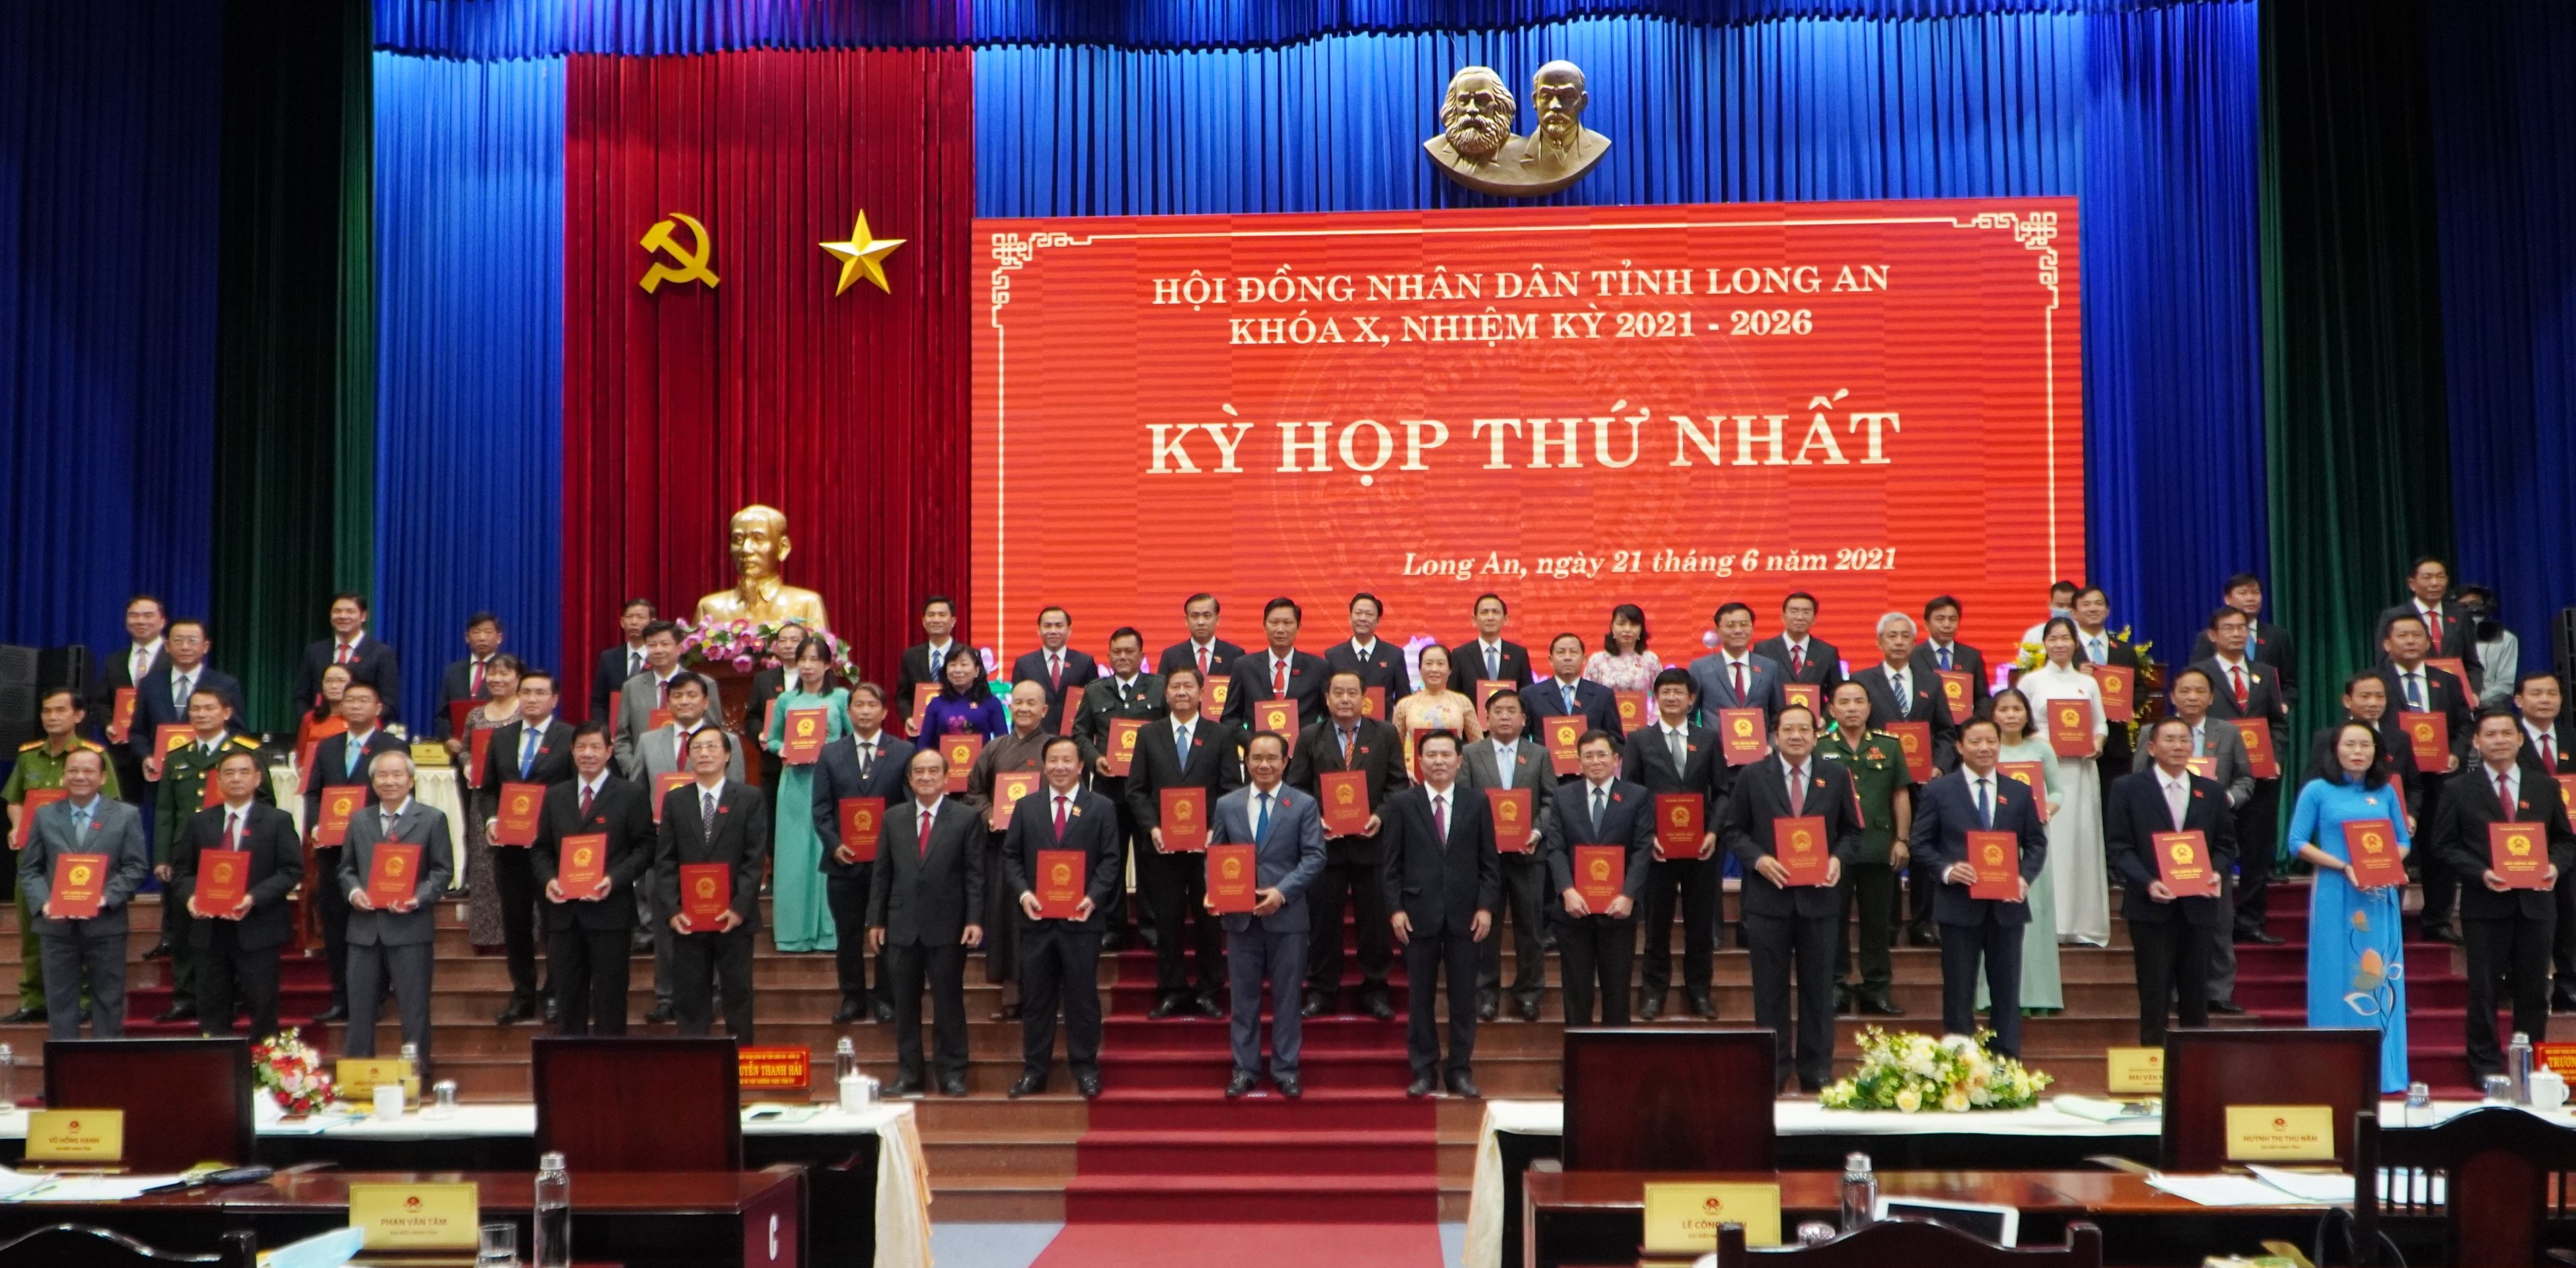 60 đại biểu HĐND tỉnh Long An Khóa X, nhiệm kỳ 2021 - 2026 nhận giấy chứng nhận đại biểu HĐND tỉnh và ra mắt- Ảnh: T. Nhất